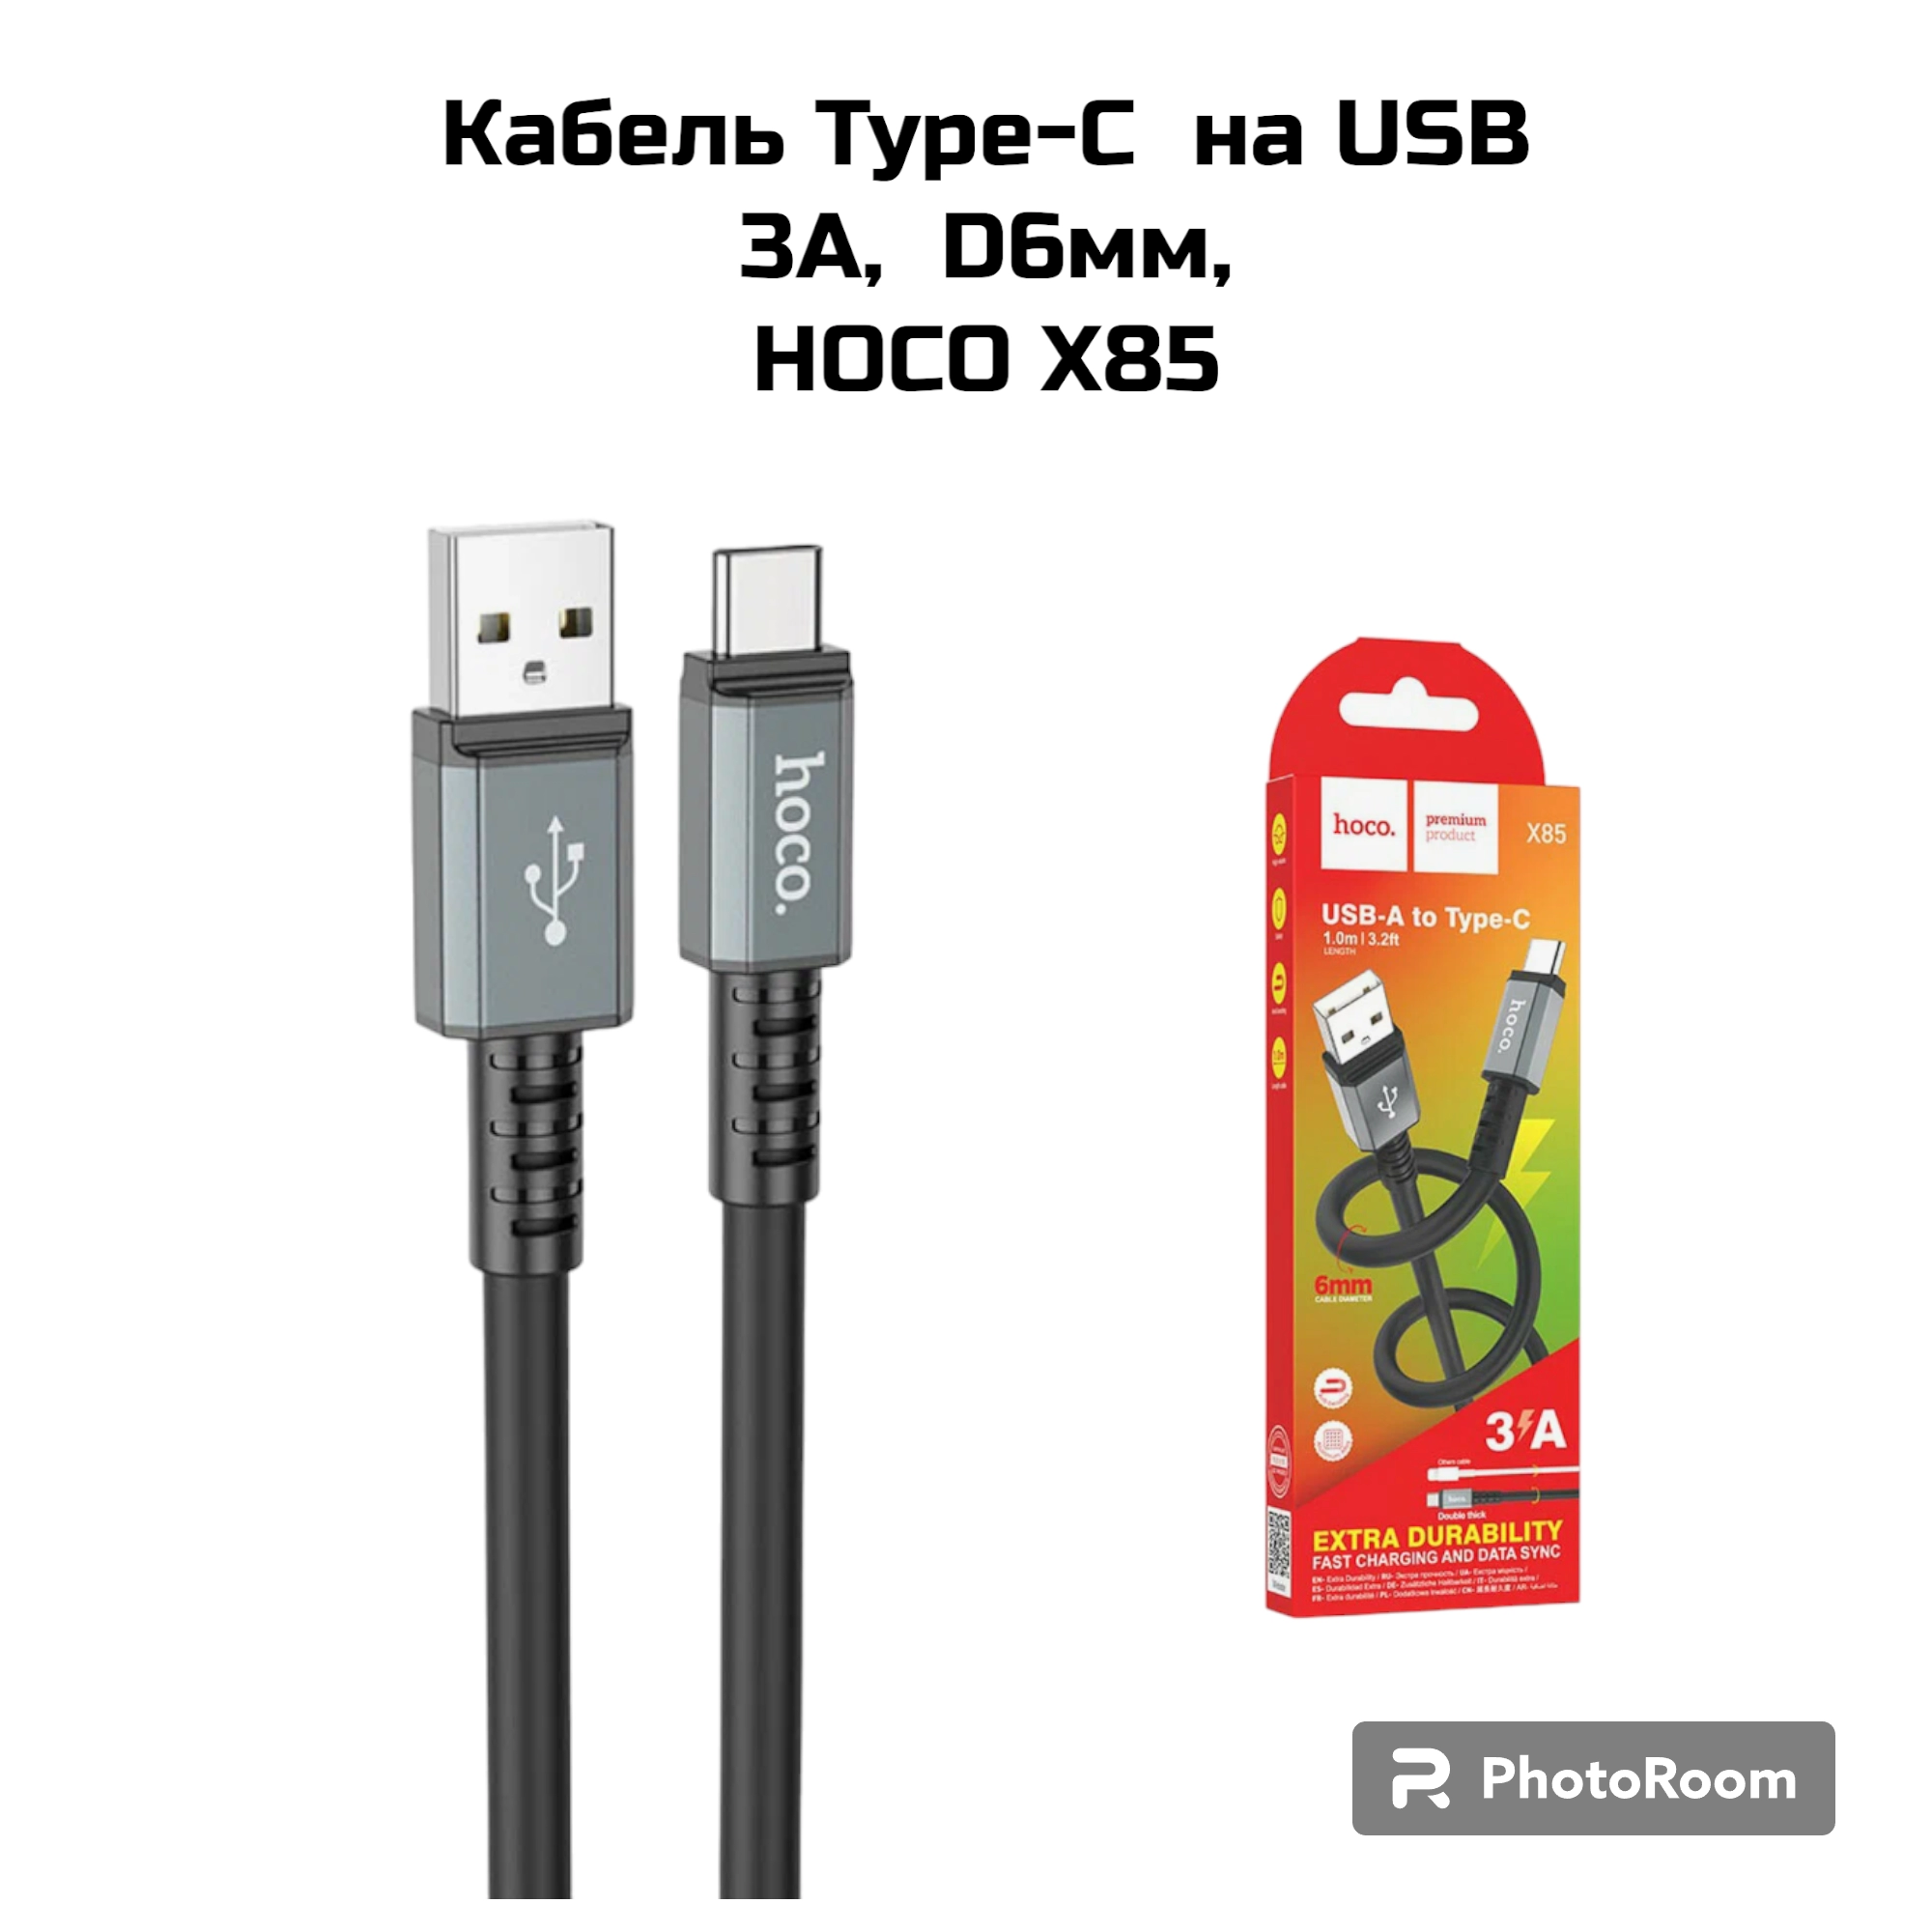 Кабель Type-C  на USB 3А,  D6мм, HOCO X85  черный